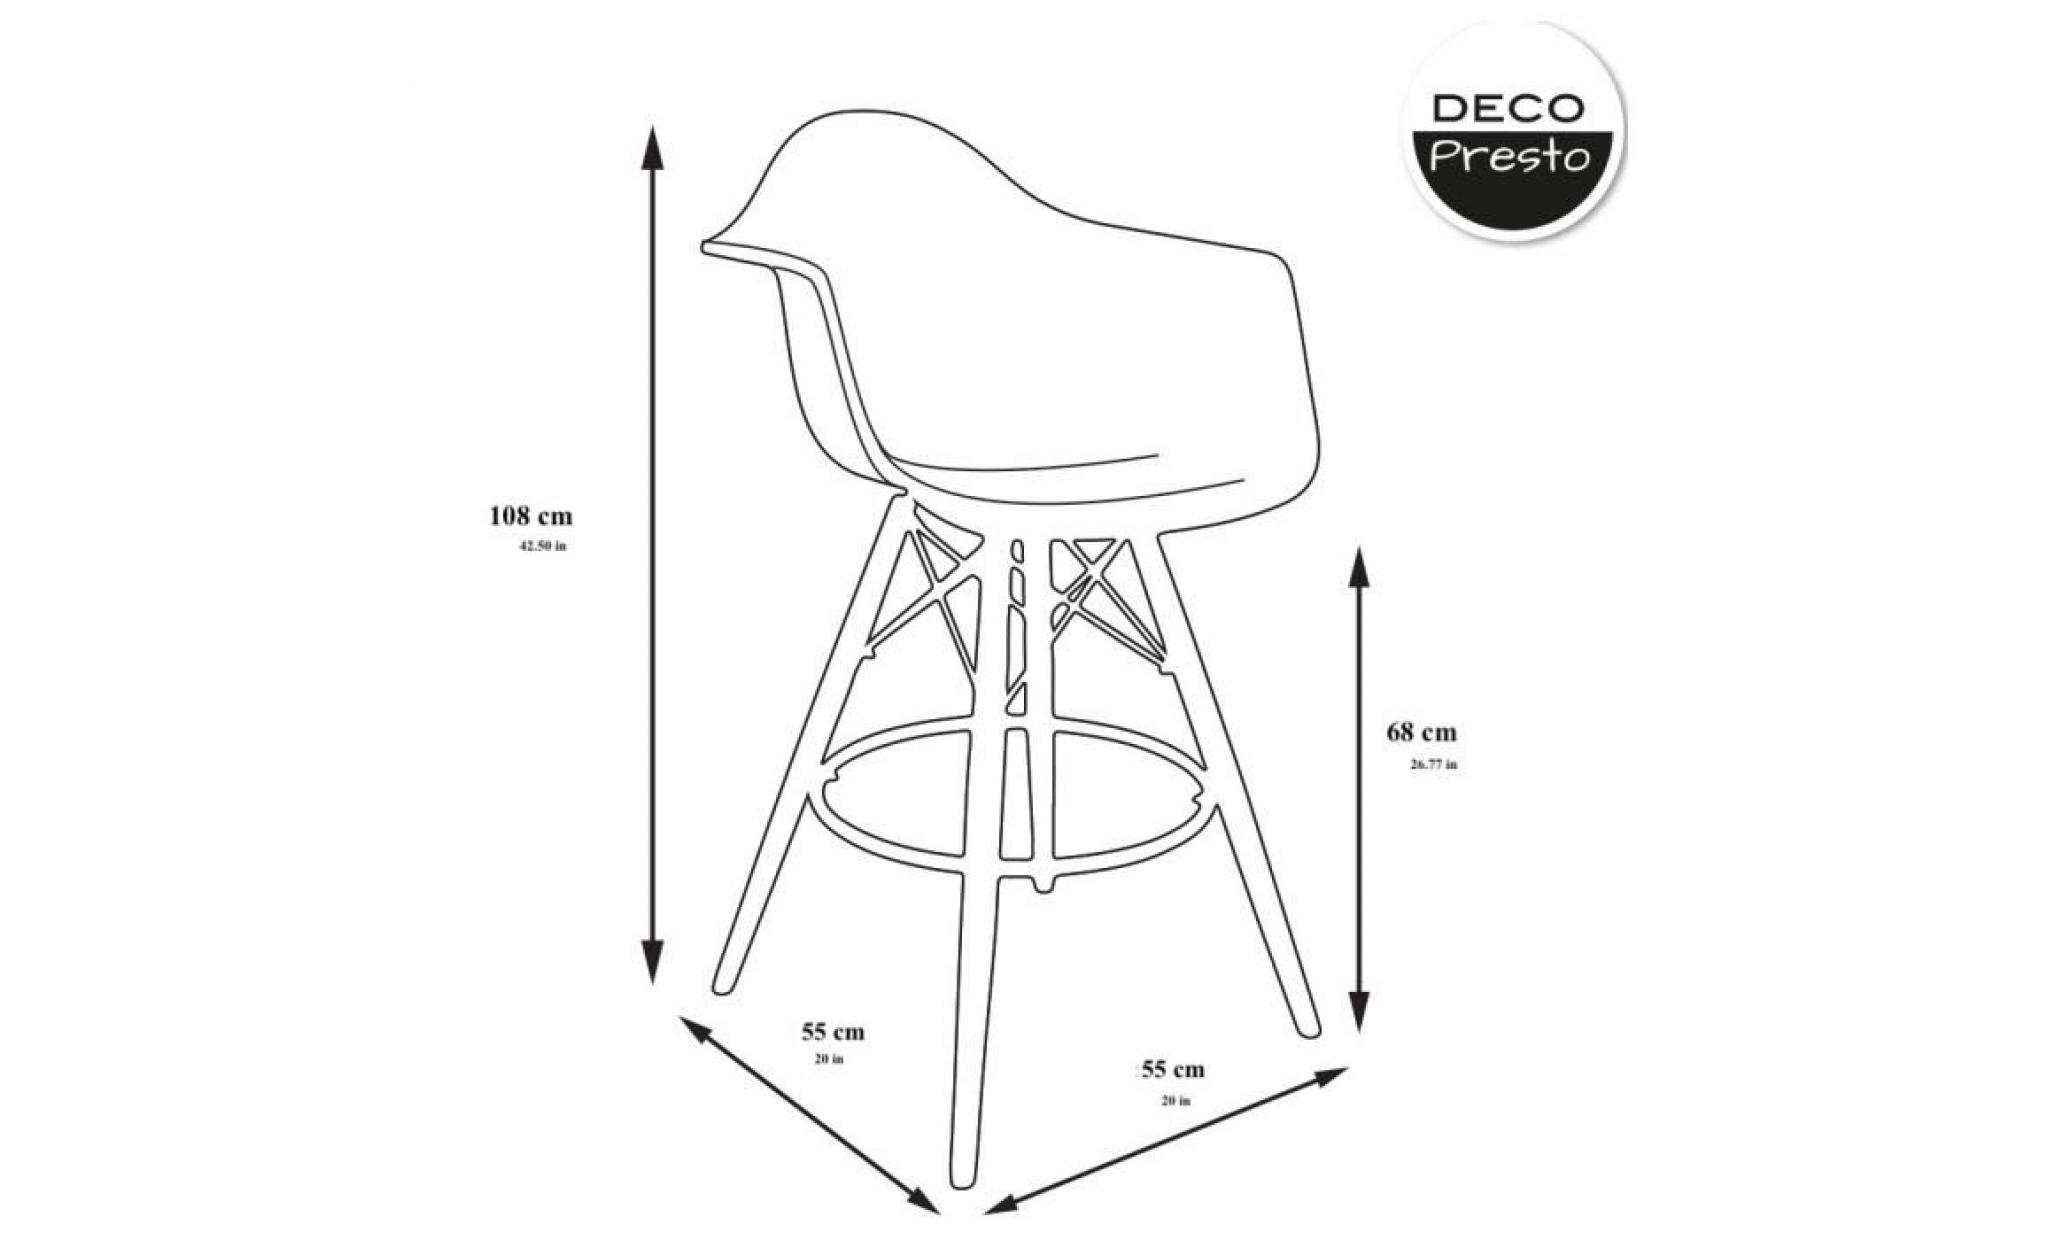 1 x fauteuil haut tabouret de bar scandinave  ocean clair pieds: bois noir decopresto dp dawhb bc 1 pas cher